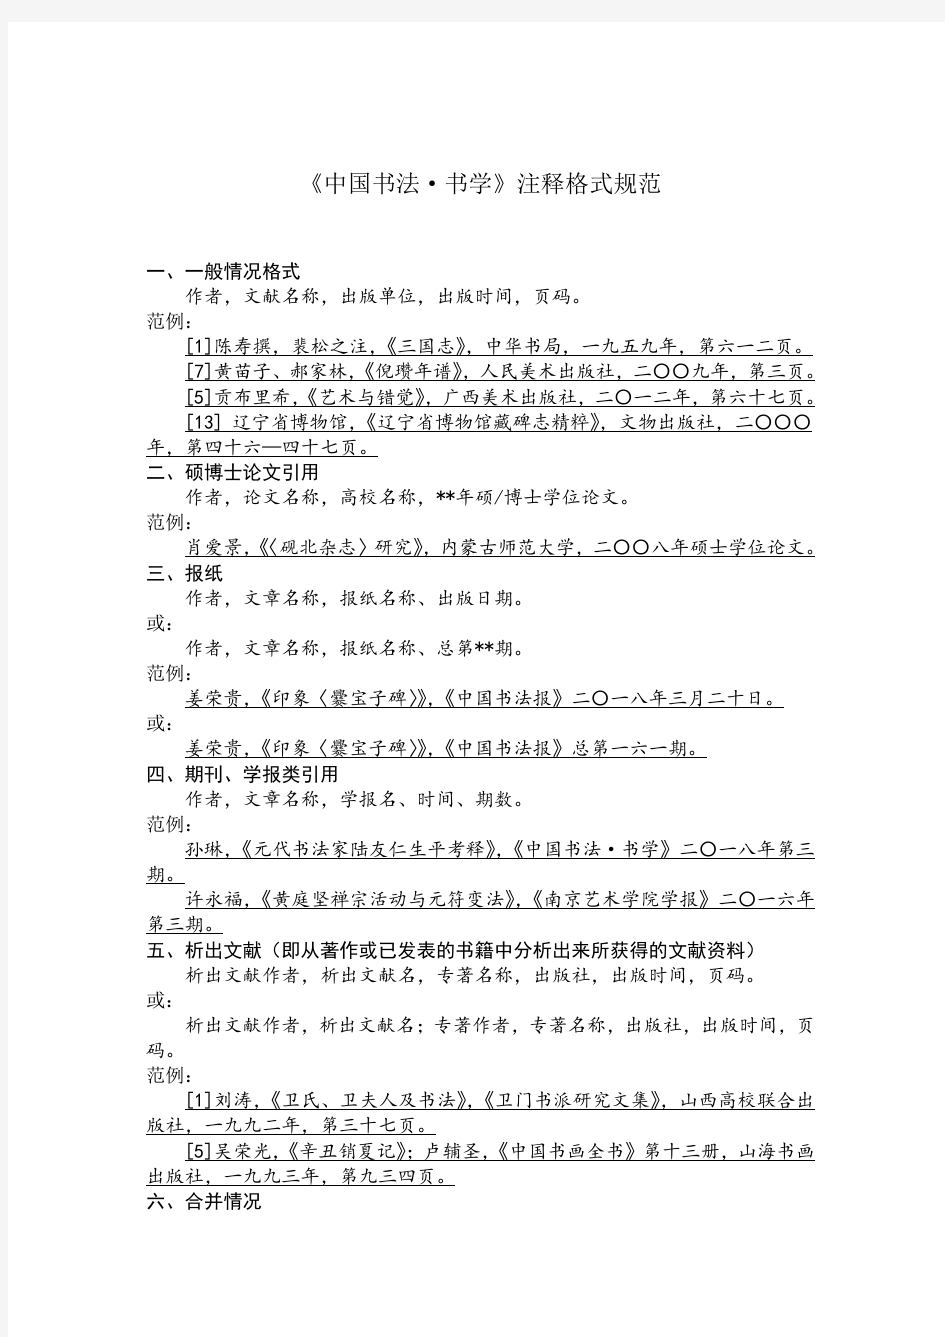 注释格式规范——《中国书法·书学》